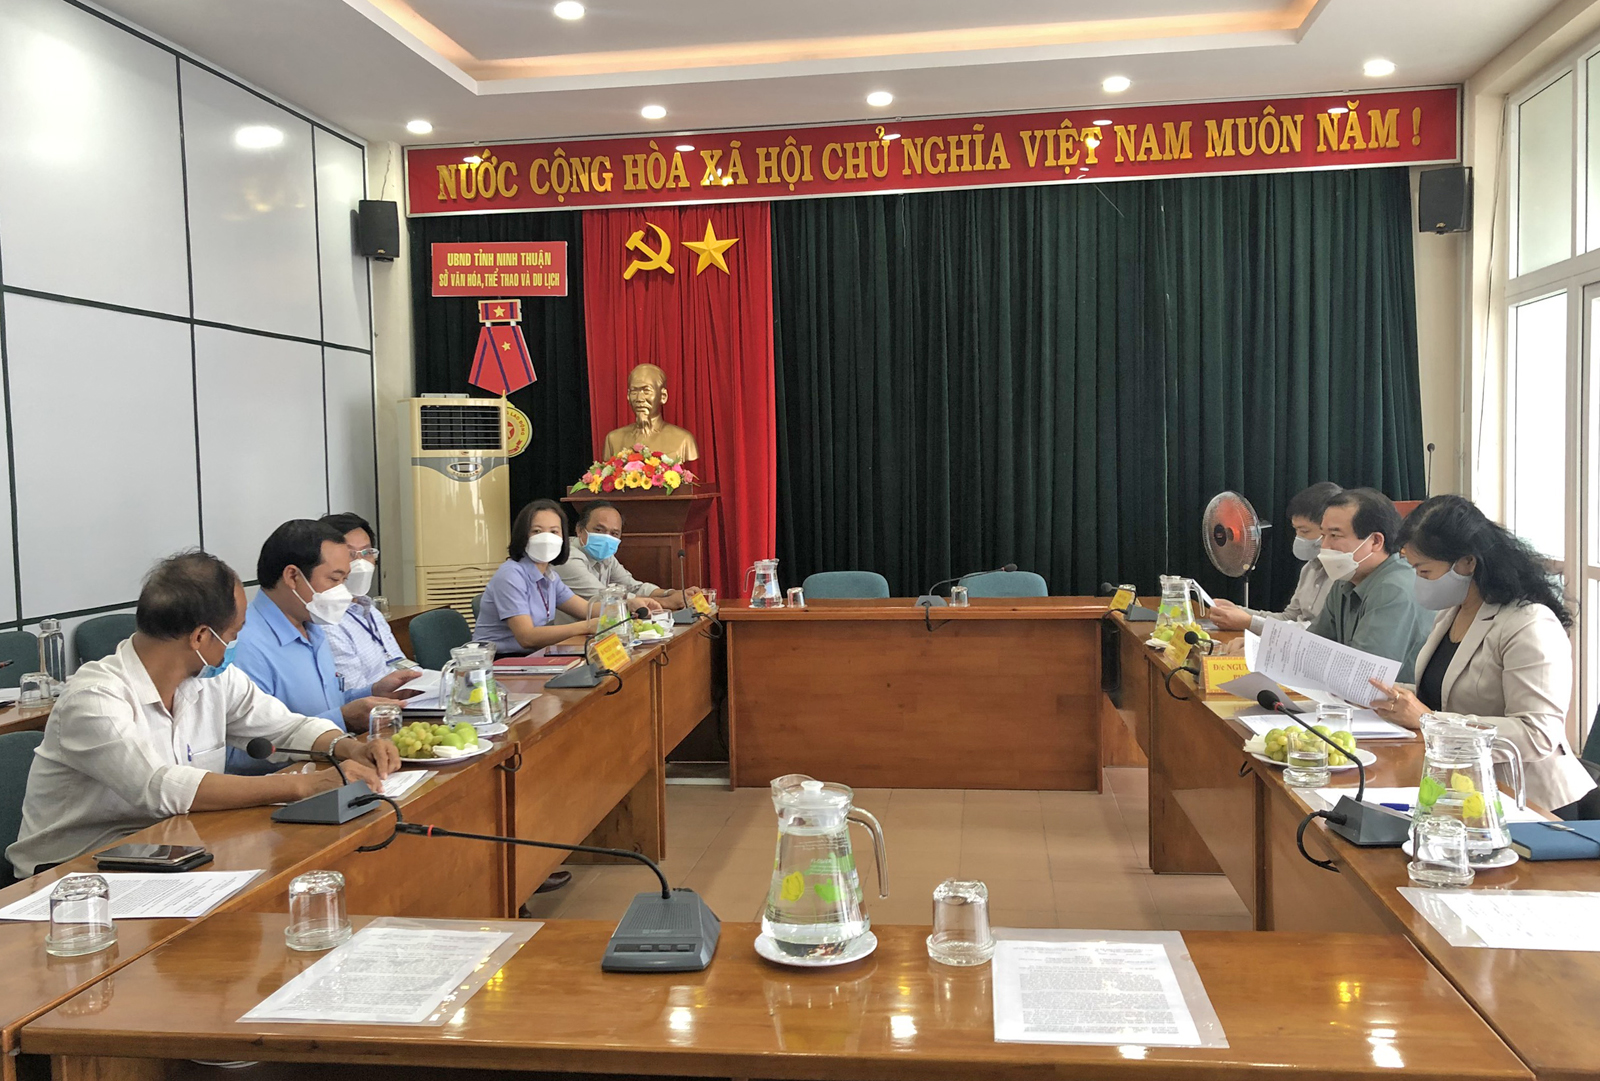 Phó Tổng cục trưởng Hà Văn Siêu: Ninh Thuận cần tận dụng nét văn hóa độc đáo để xây dựng các sản phẩm du lịch hấp dẫn, tạo động lực bứt phá